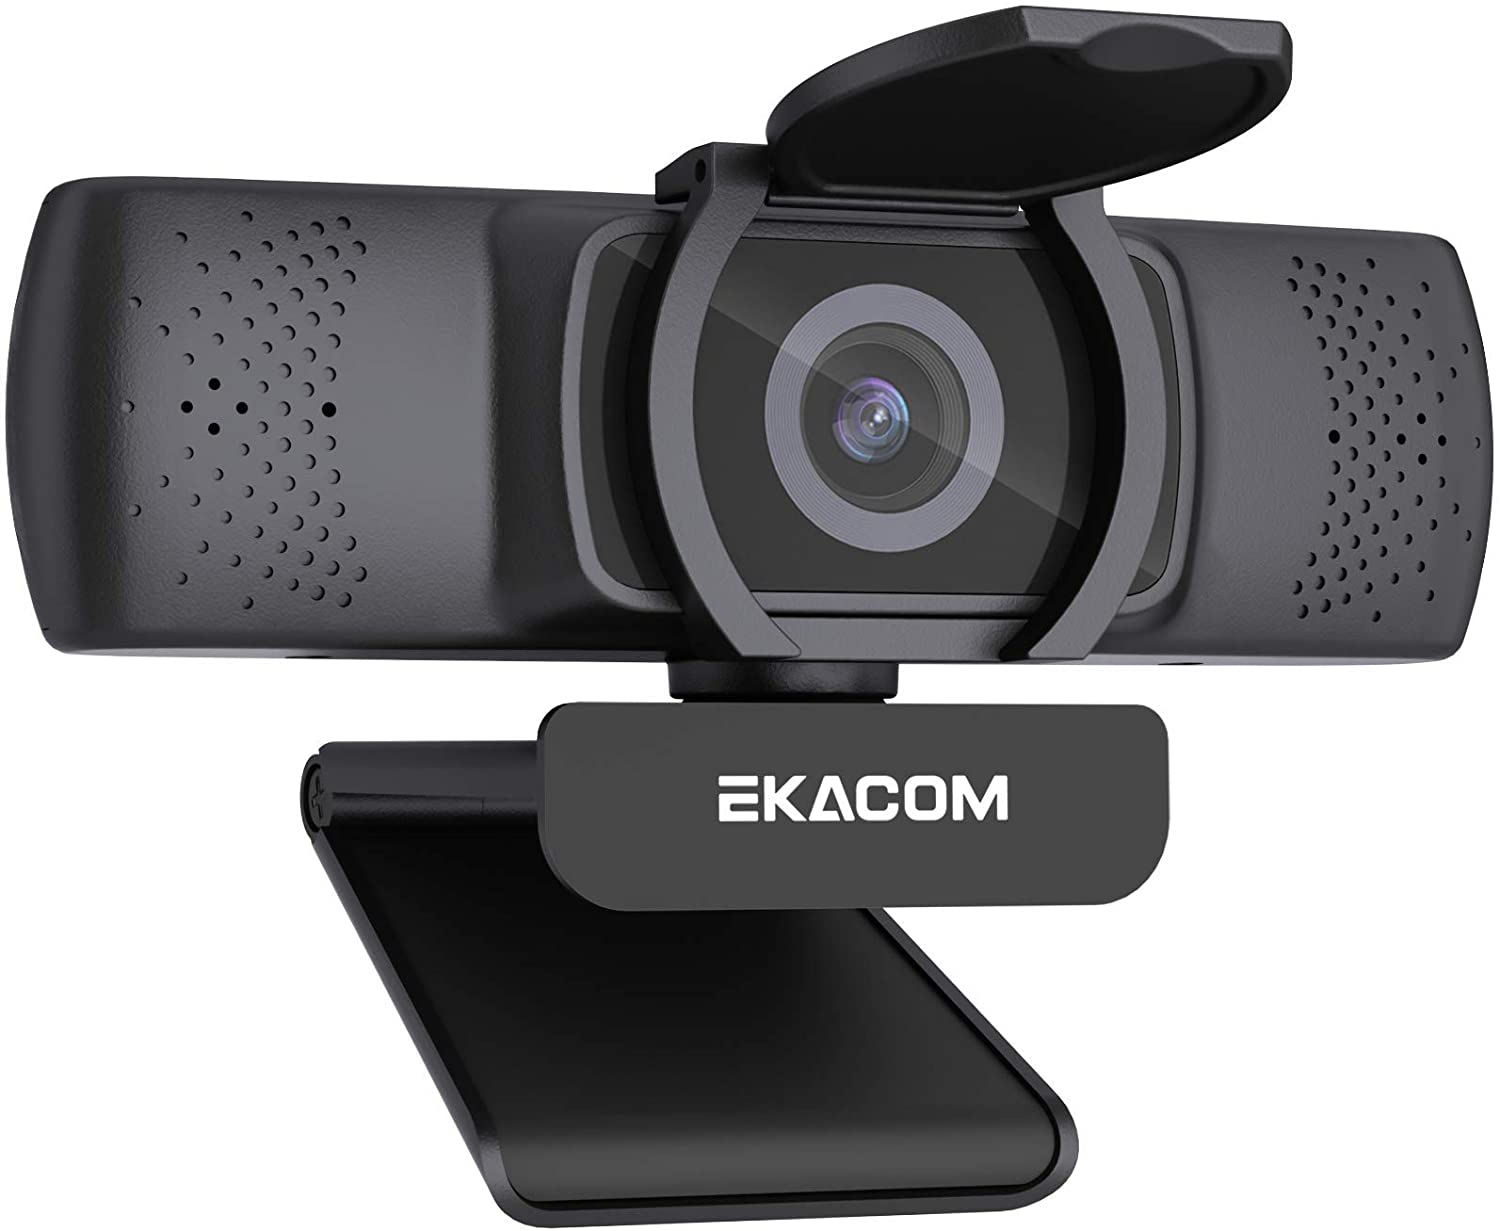 Bild zu EKACOM Full-HD Webcam mit Mikrofon und Kameraabdeckung für 9,82€